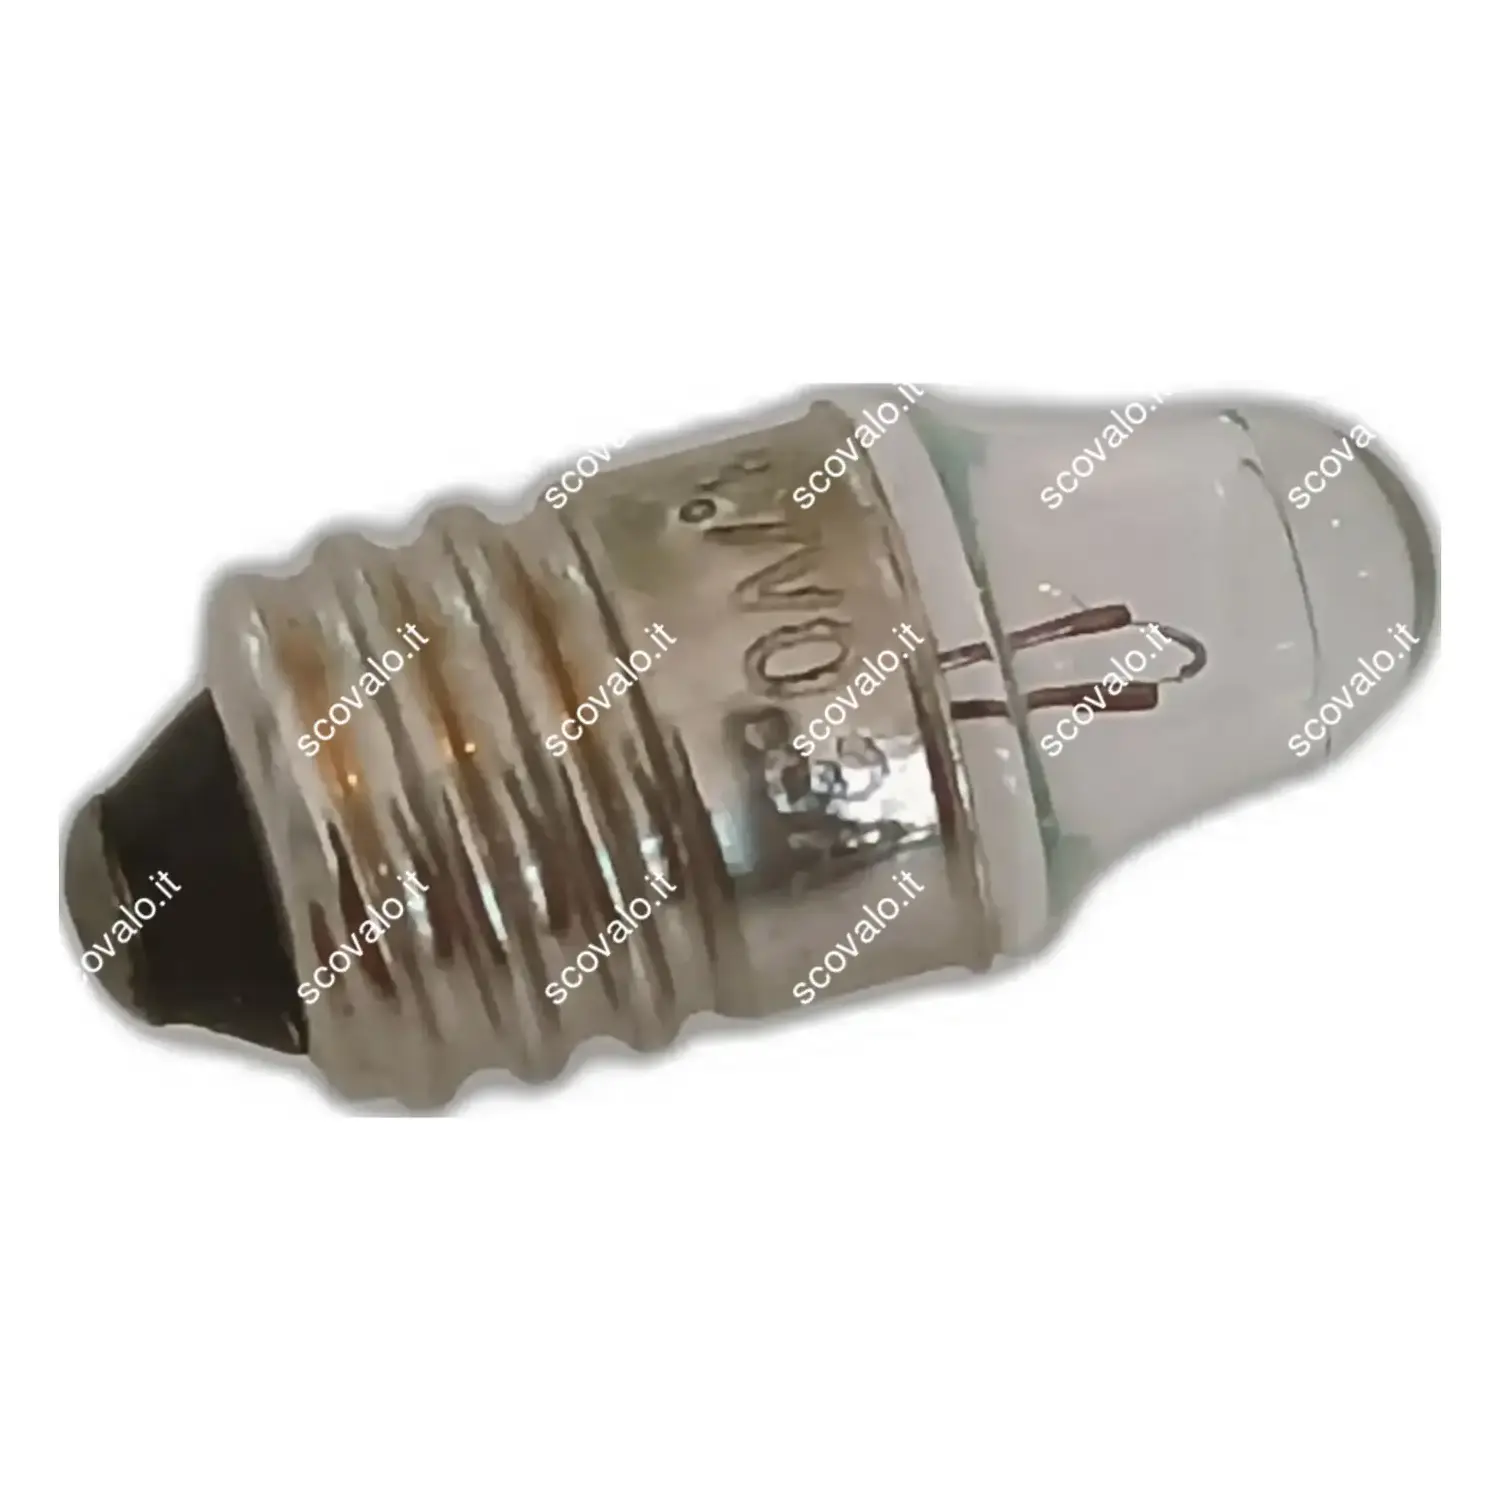 immagine lampadina a faretto appuntita miniatura modellismo e10 1,10 watt 3,7 volt